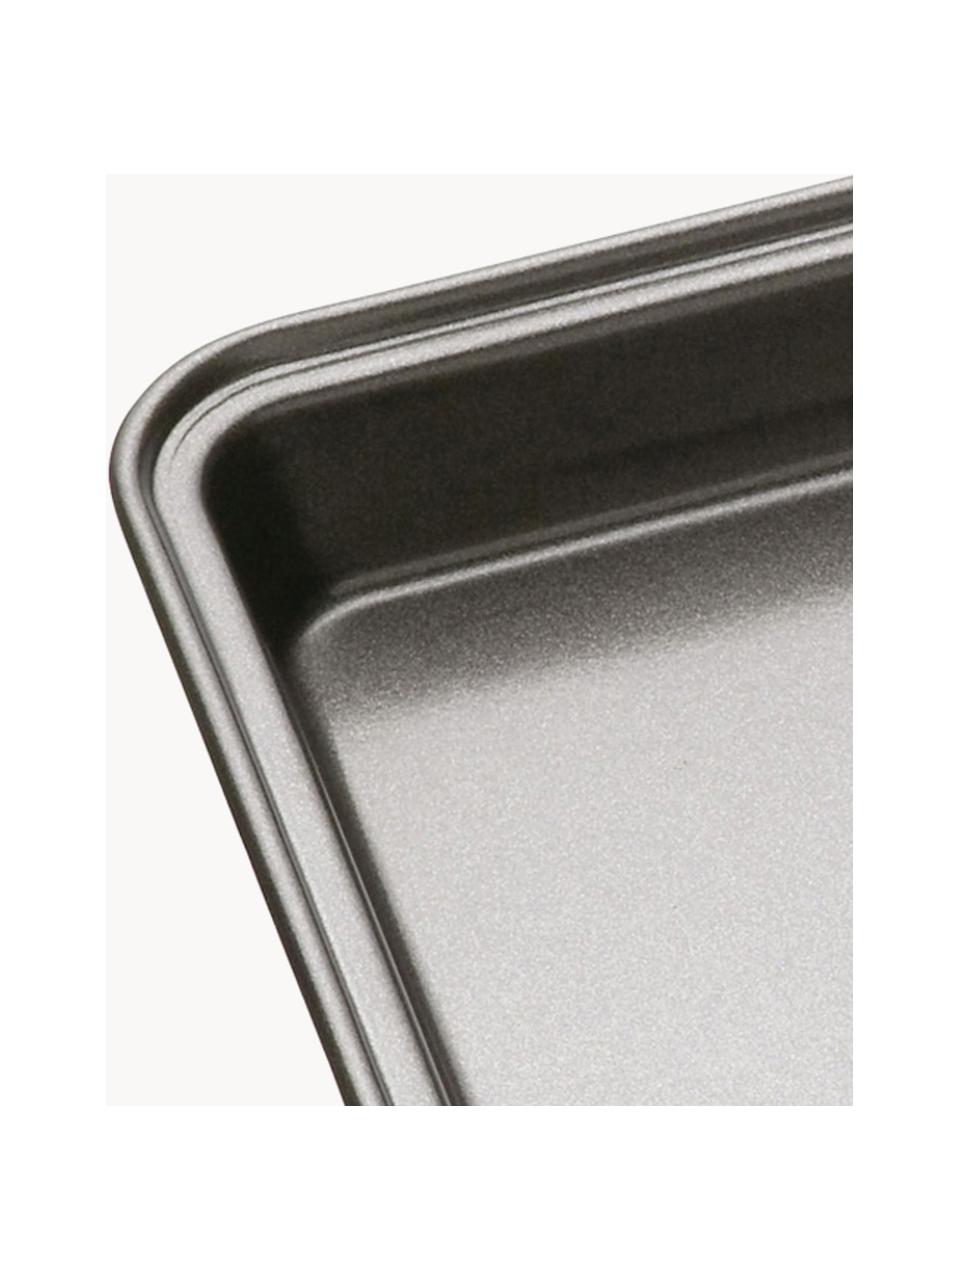 Ofenform MasterClass mit Antihaft-Beschichtung, verschiedene Grössen, Stahl mit Antihaft-Beschichtung, Schwarz, B 24 x H 5 cm